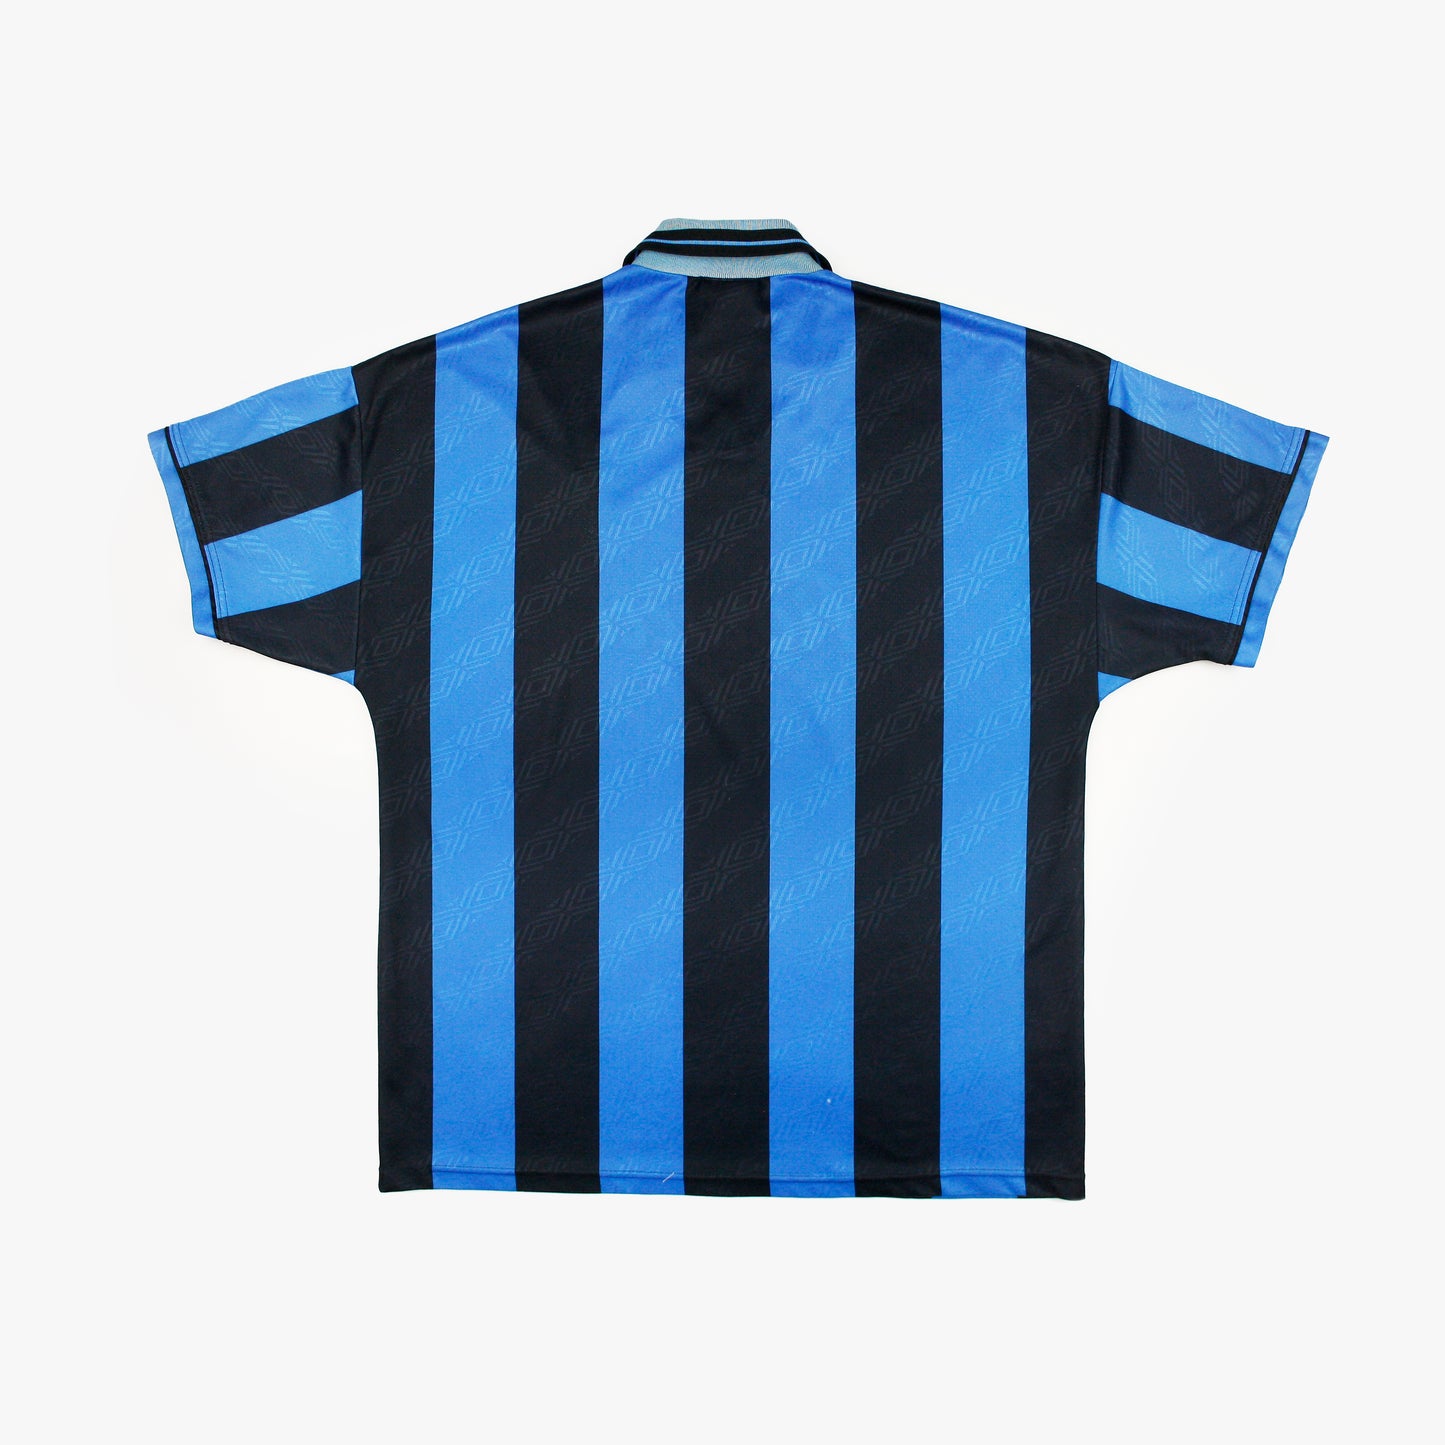 Inter de Milán 94/95 • Camiseta Local • L